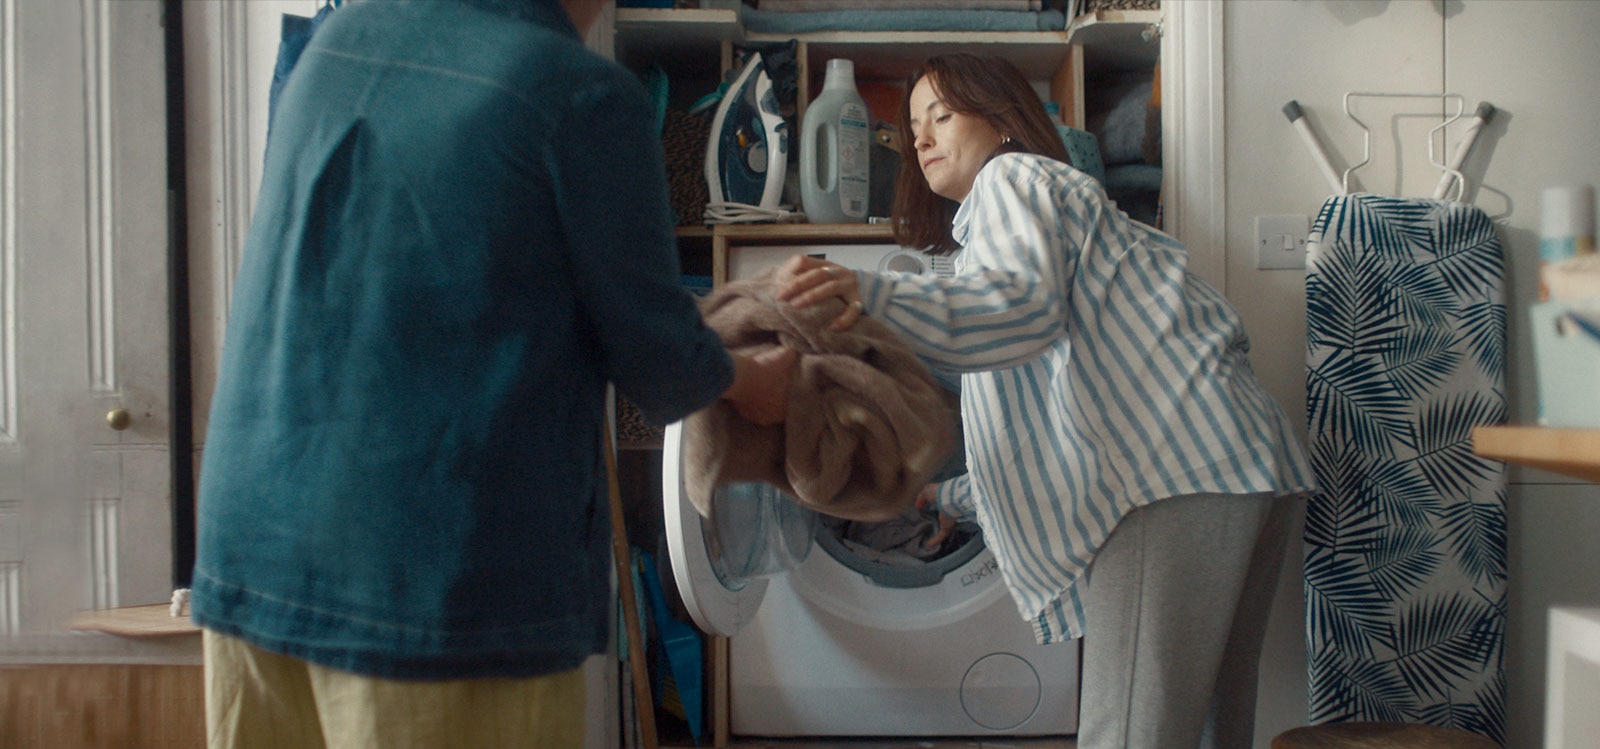 Naine võtab masinast pesu välja ja ulatab emale.